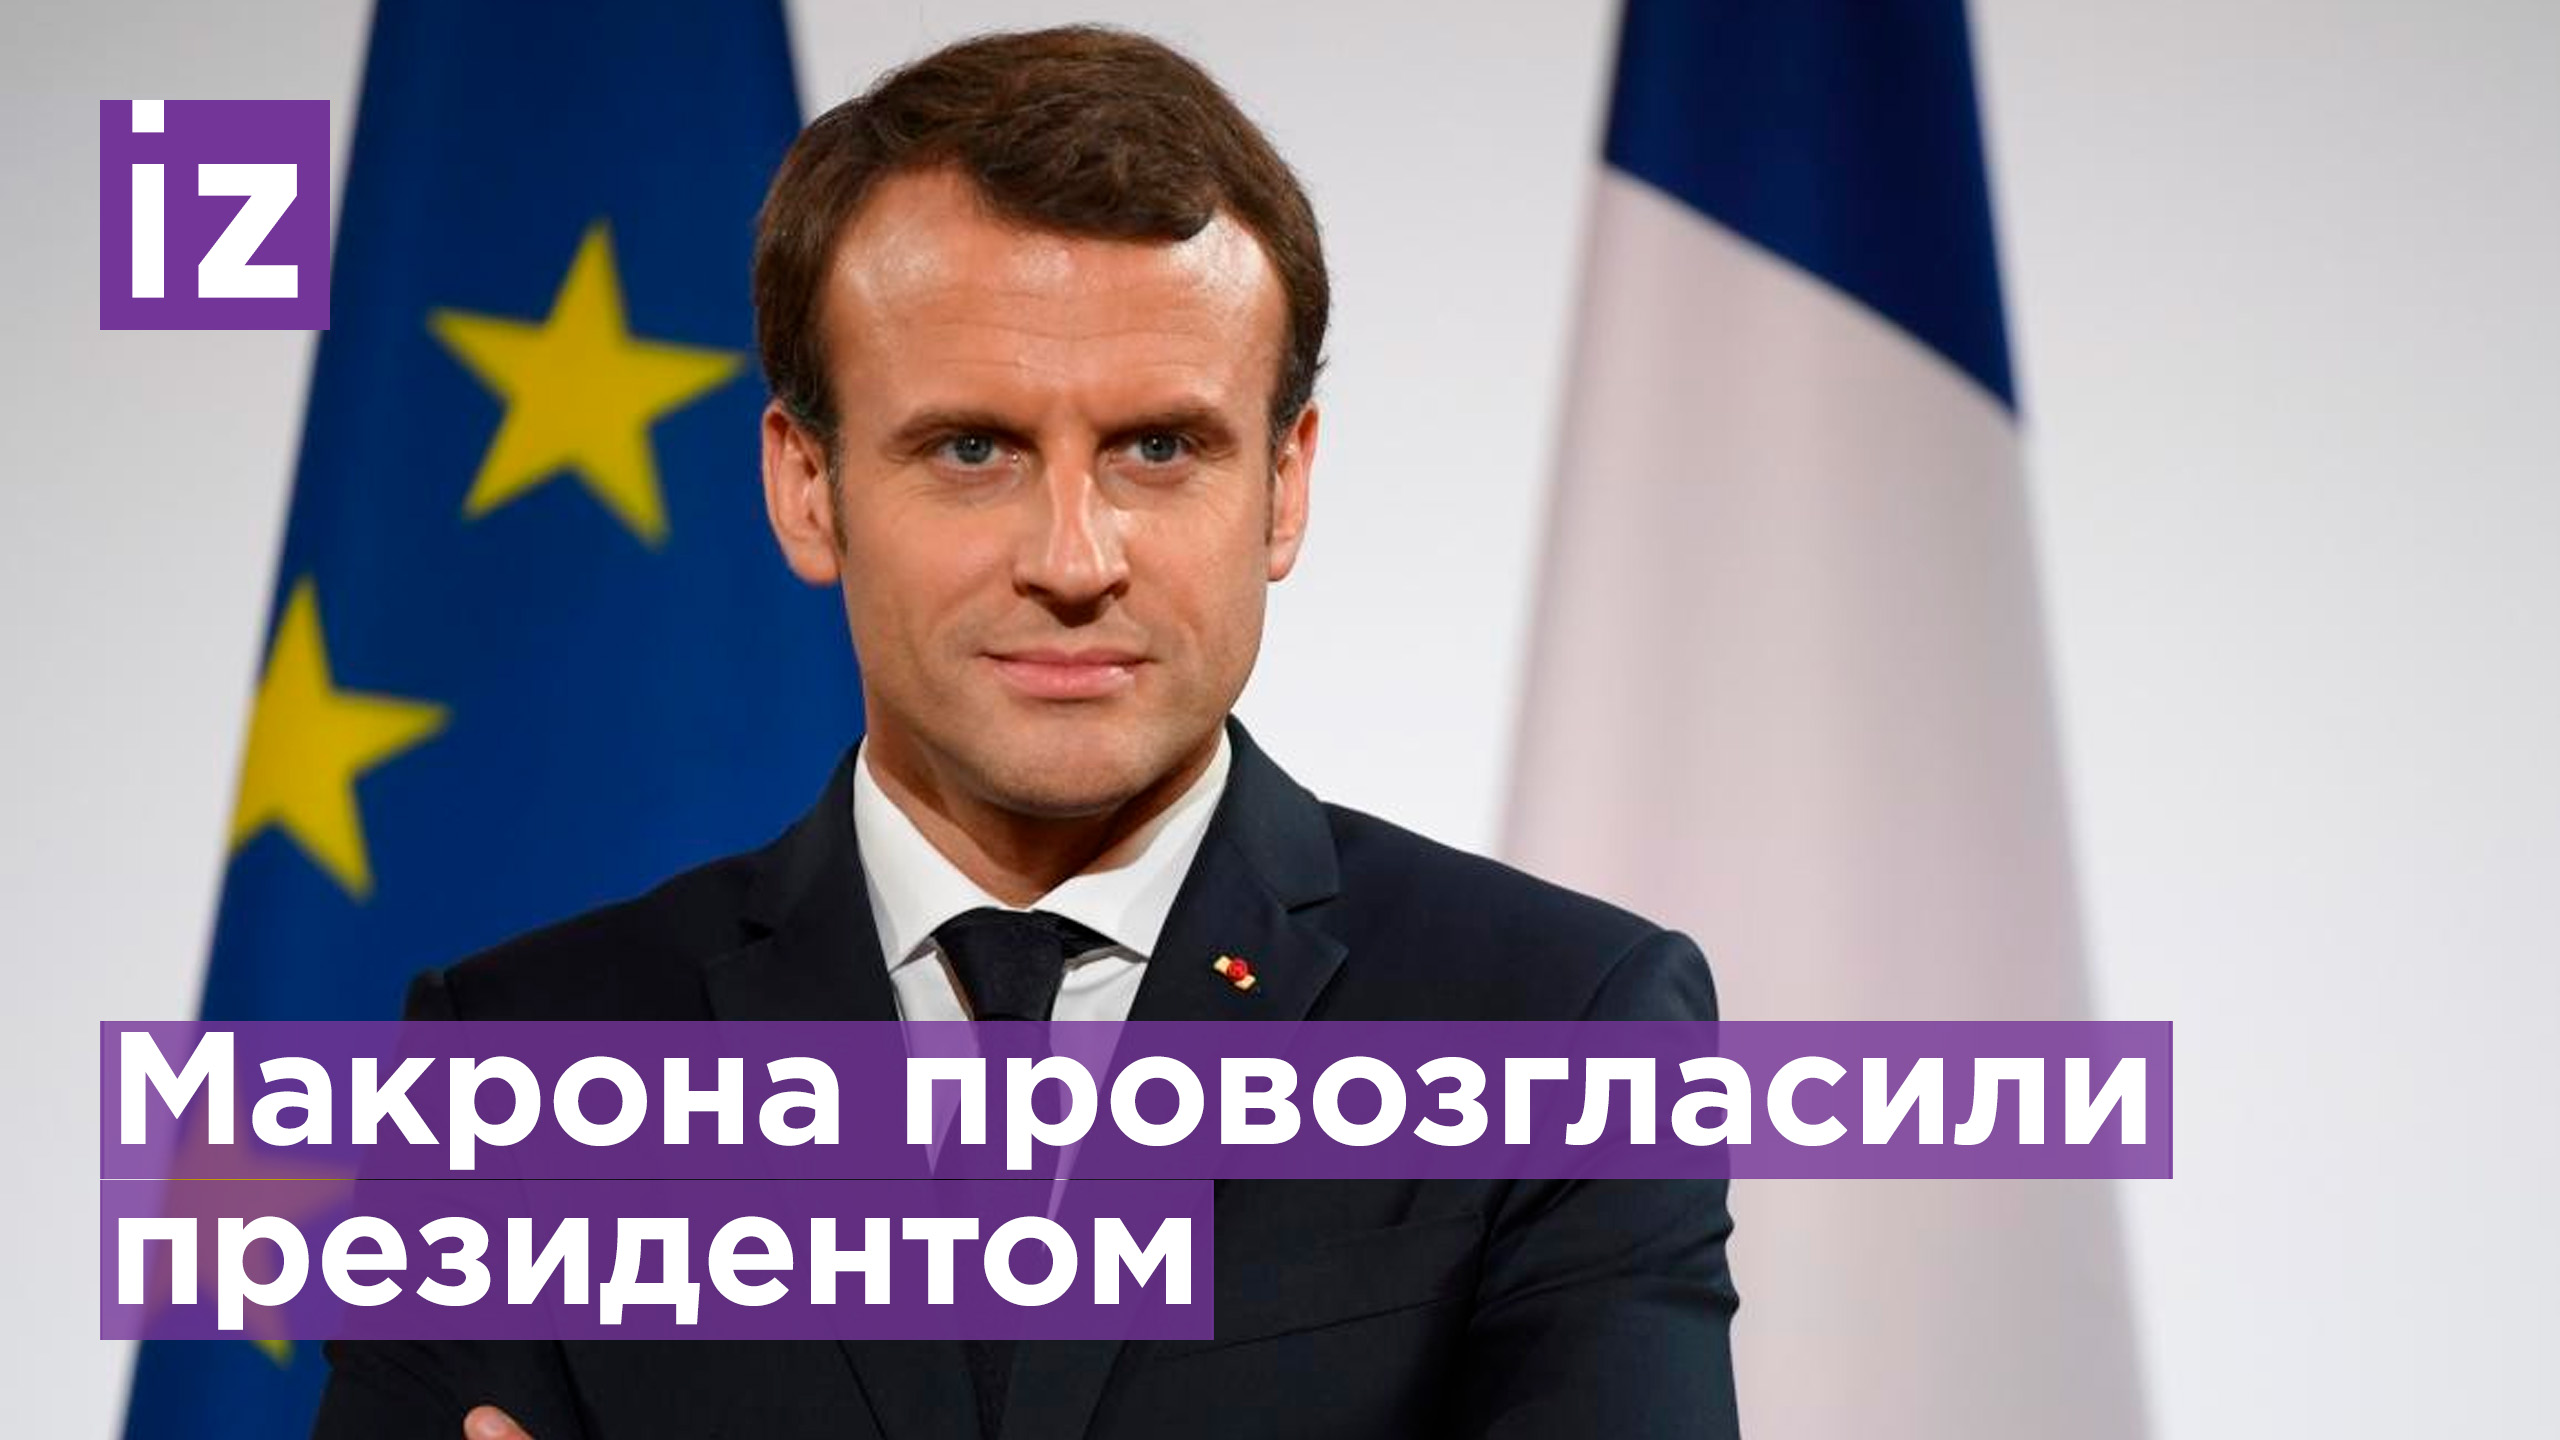 Макрона официально провозгласили президентом Франции / Известия